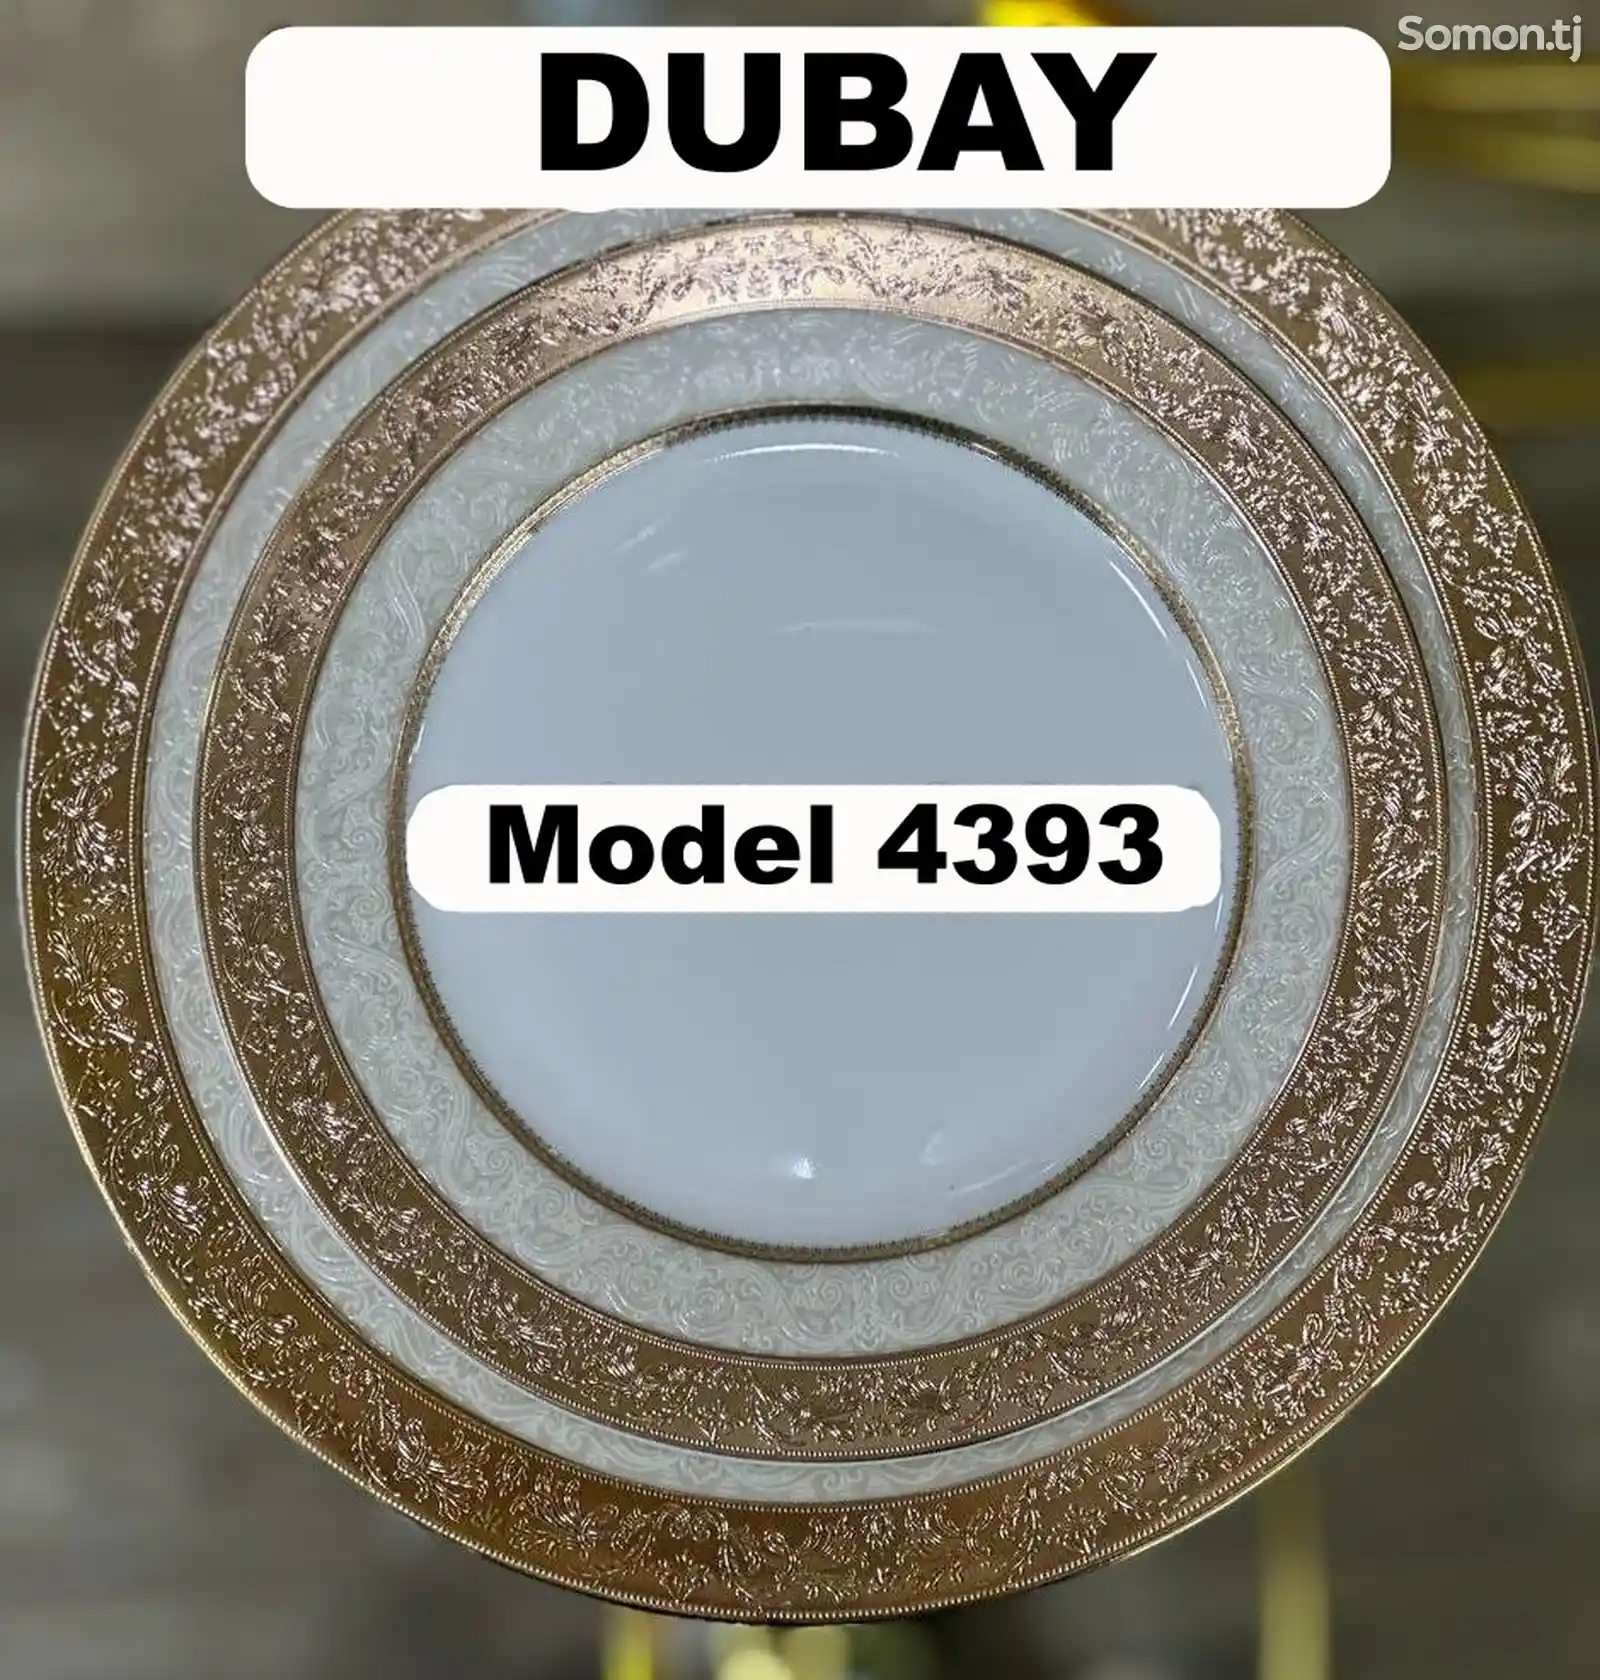 Набор посуды Dubay-4393 комплект 6-7